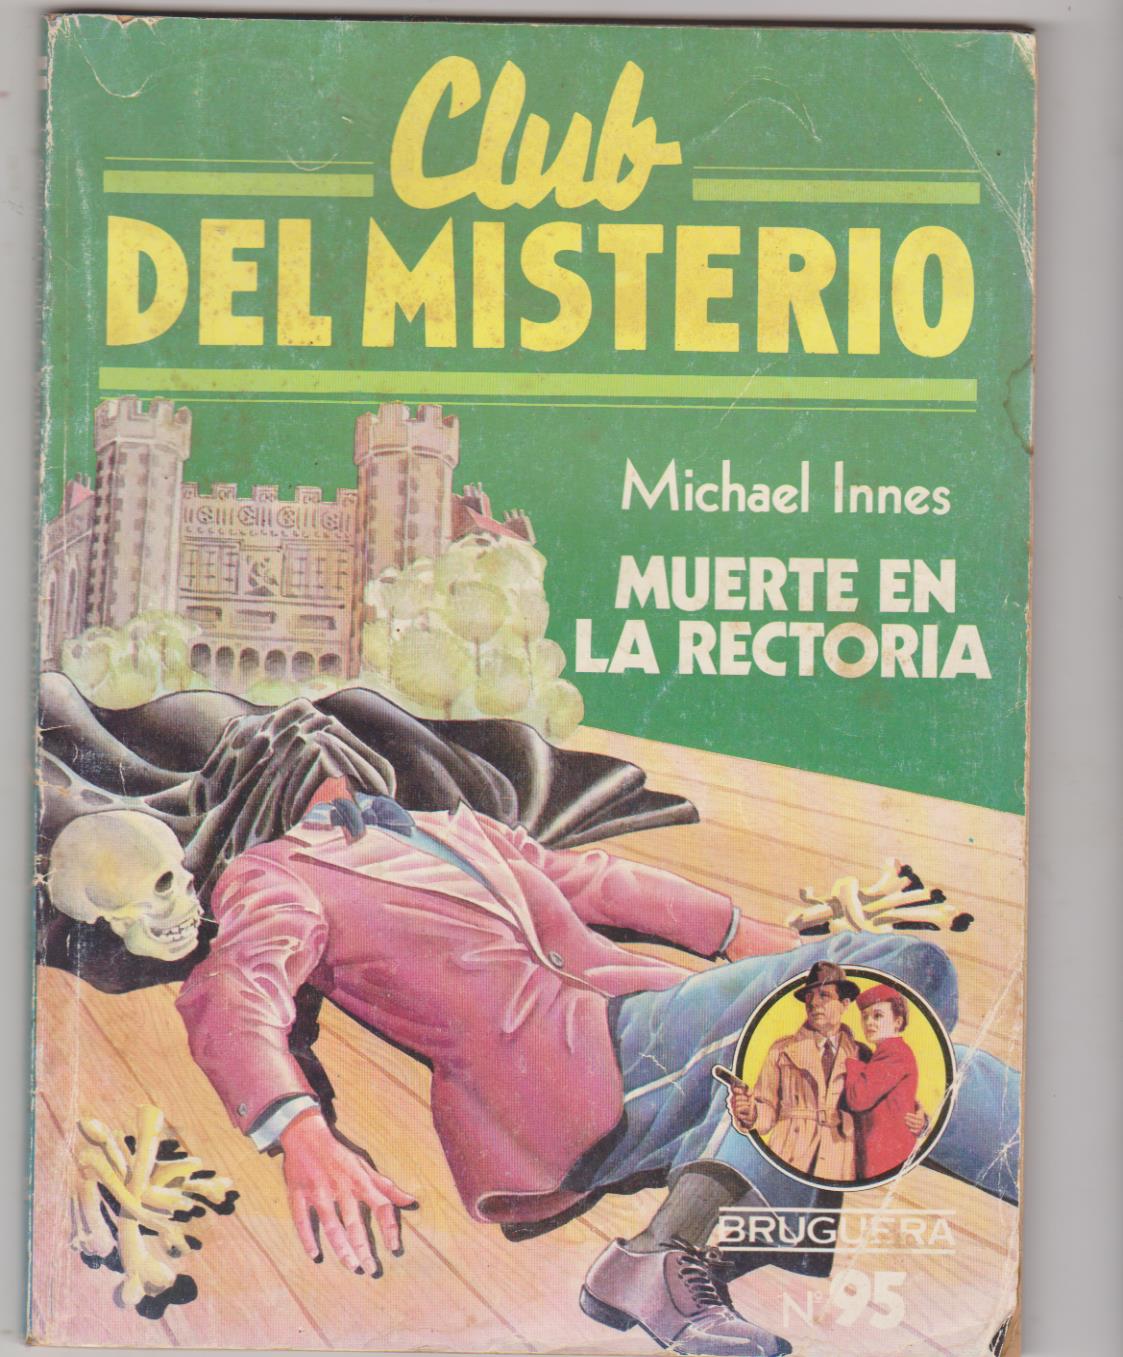 Club del Misterio nº 95. Muerte en la rectoría. Bruguera 1983